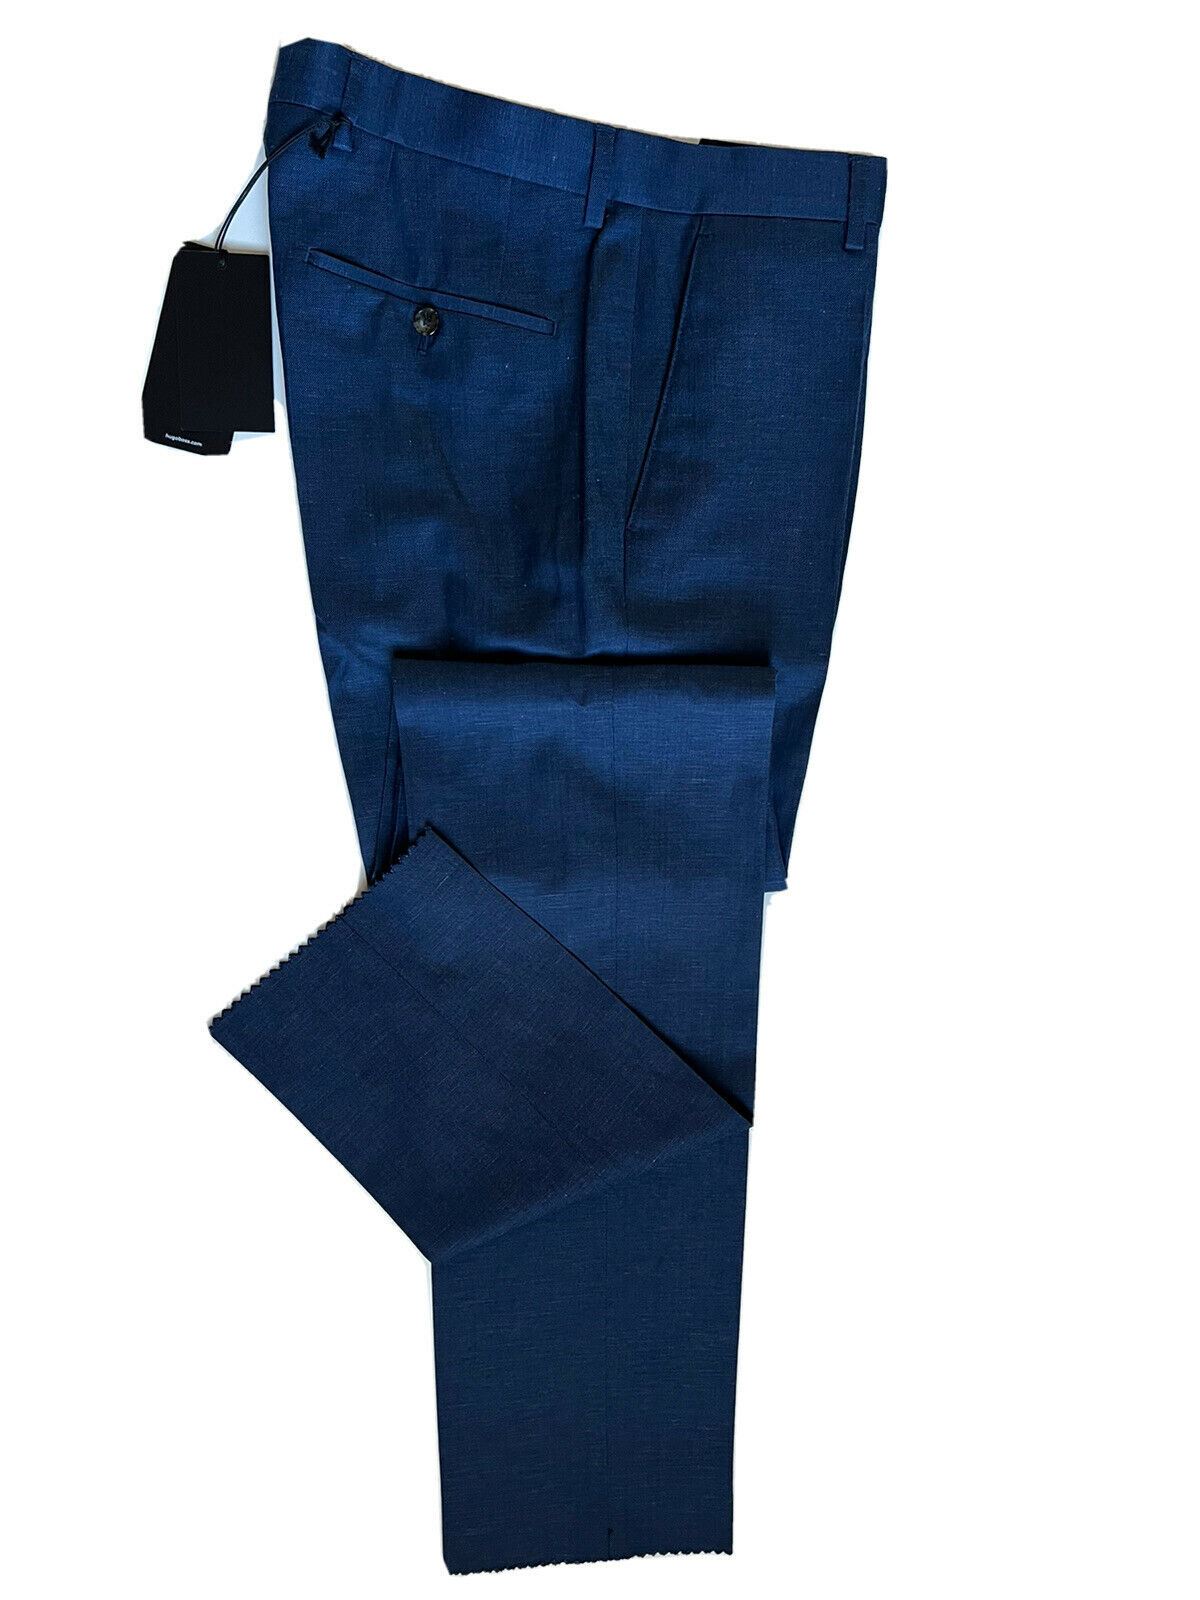 СЗТ $245 Boss Hugo Boss Genesis4 Мужские синие классические брюки из шерсти/льна, размер 30 США